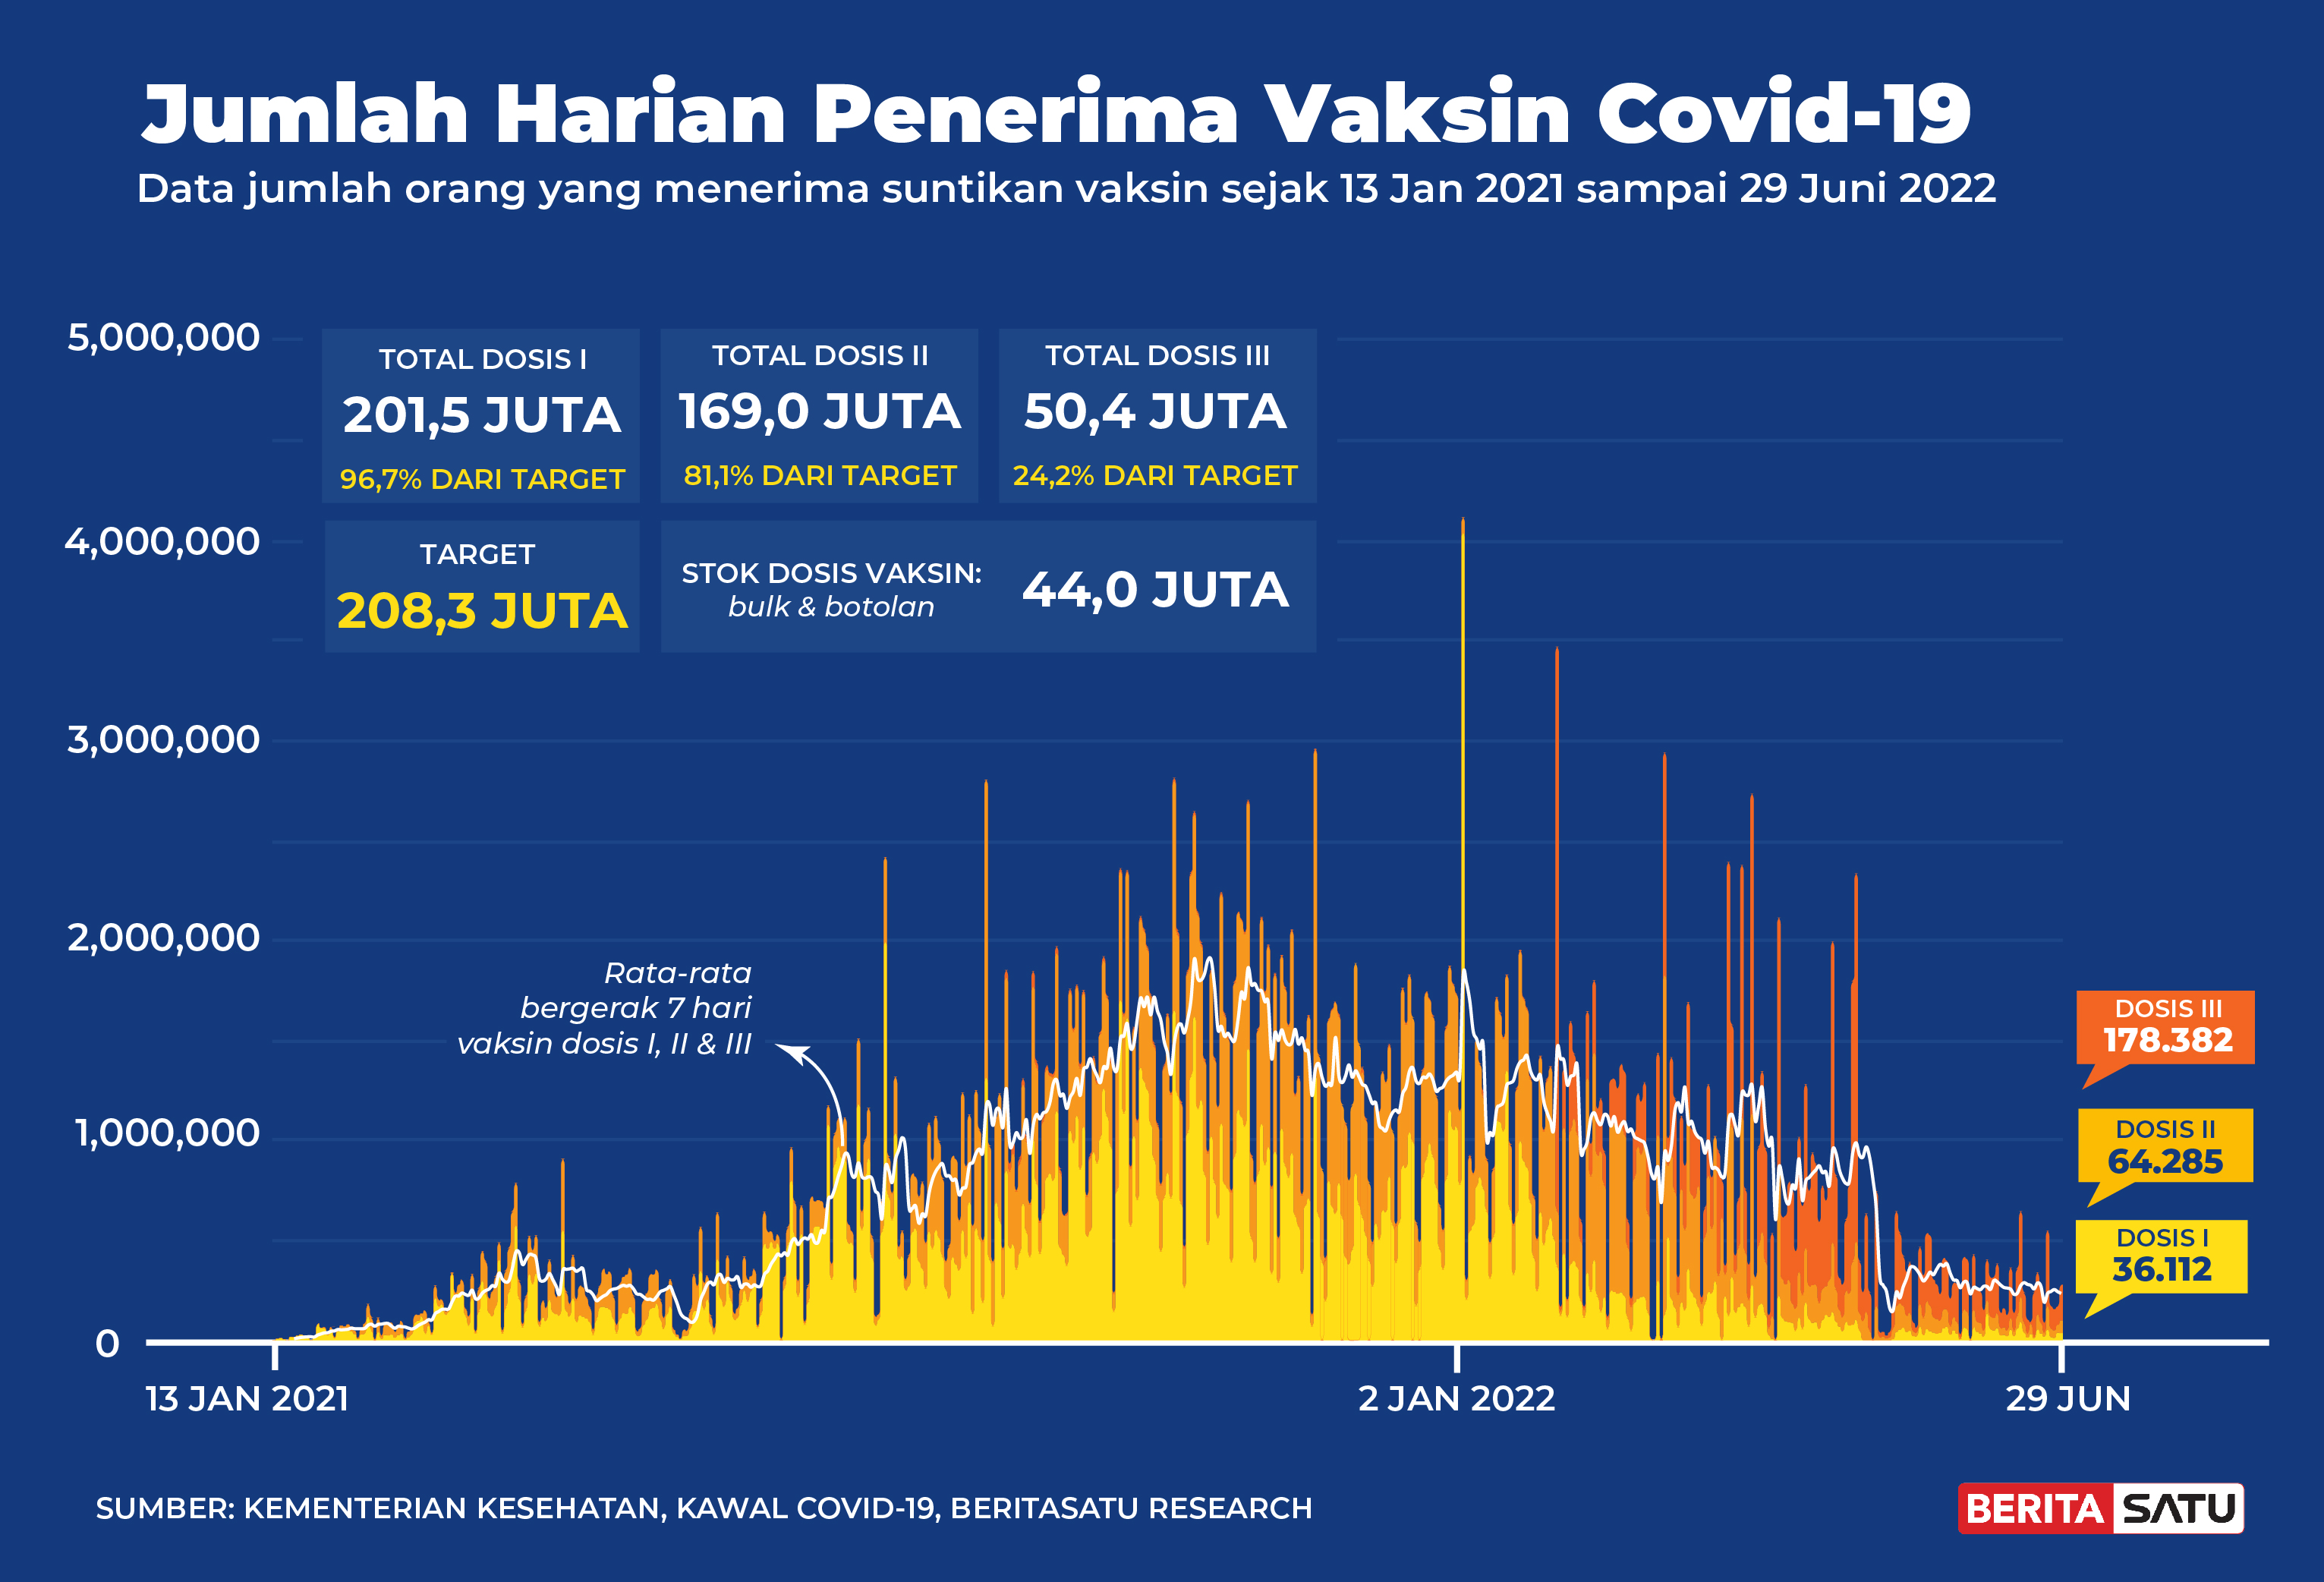 Penerima Vaksin Covid-19 di Indonesia sampai 29 Juni 2022